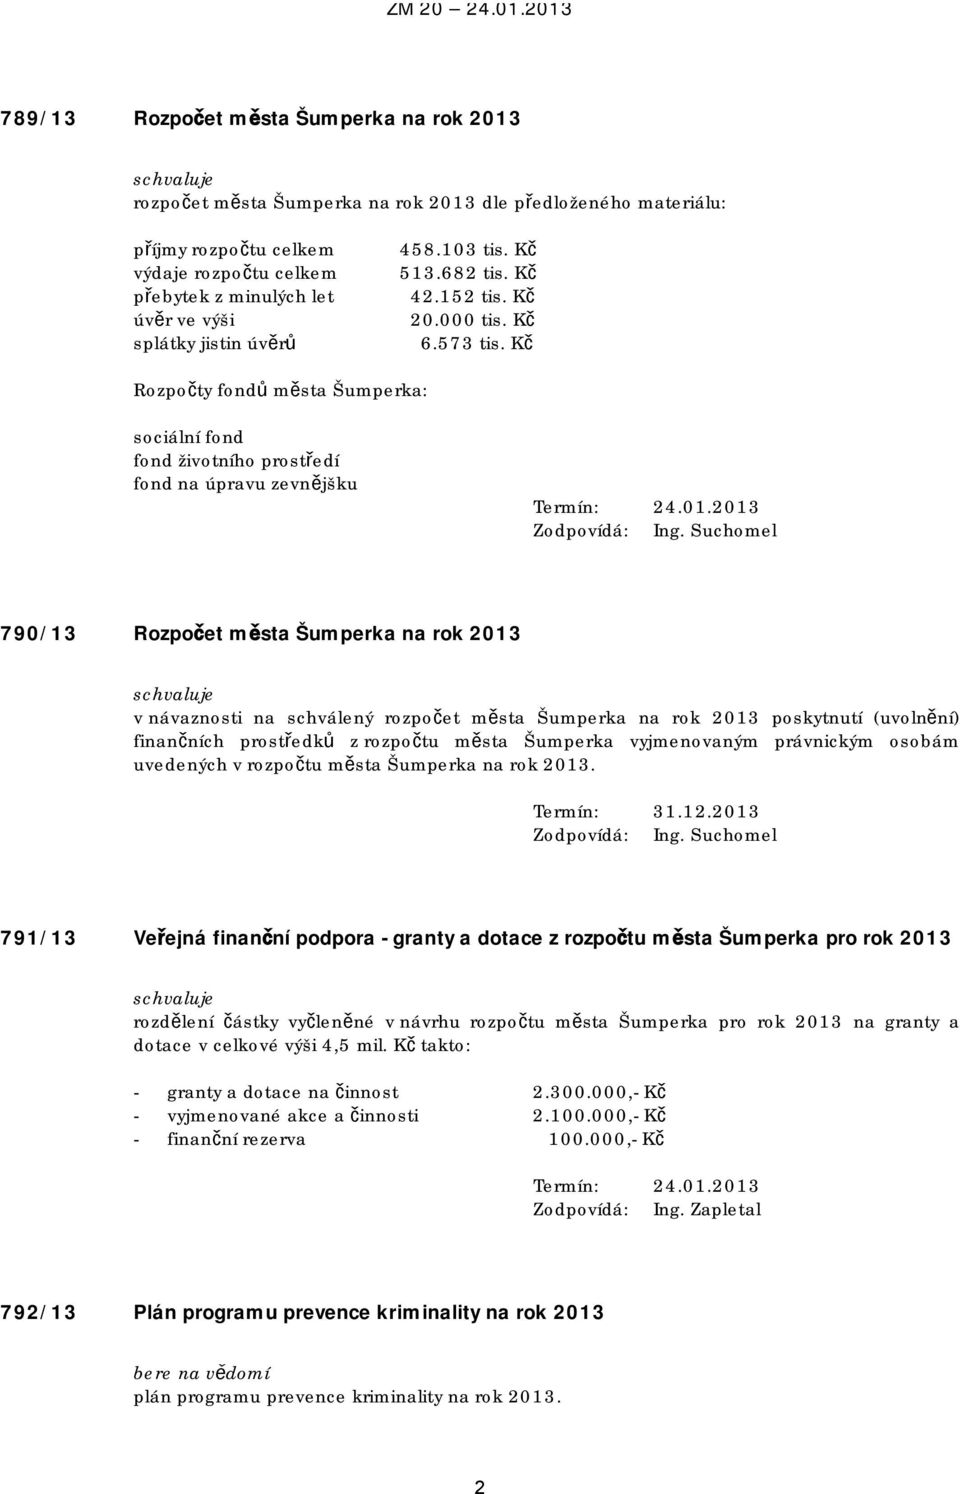 2013 790/13 Rozpočet města Šumperka na rok 2013 v návaznosti na schválený rozpočet města Šumperka na rok 2013 poskytnutí (uvolnění) finančních prostředků z rozpočtu města Šumperka vyjmenovaným